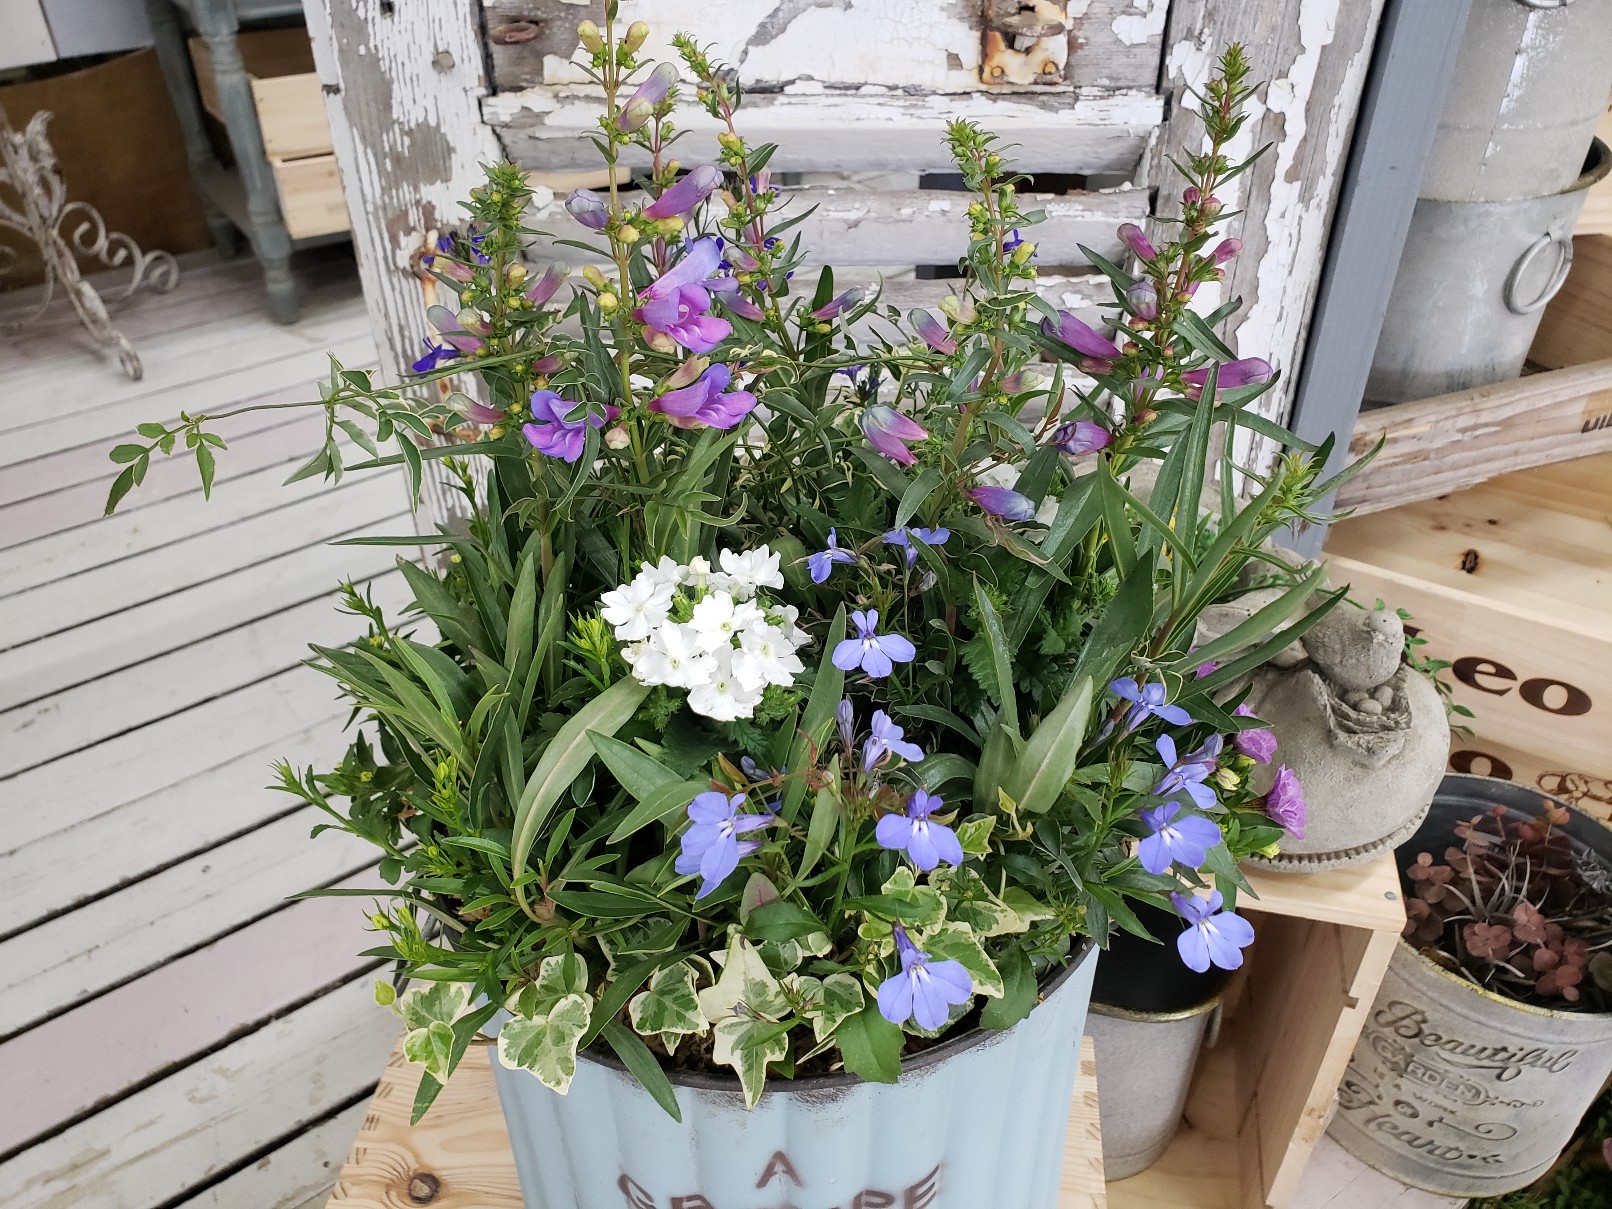 ジョイフル本田 ガーデンセンター ガーデンセンター守谷店 本日の寄せ植え ペンステモン エレクトリックブルー をメインにリーフと小花を添えて 爽やかな色合いのお花やリーフを組み合わせました 少し暑い日が続いたので涼しげな雰囲気が素敵です